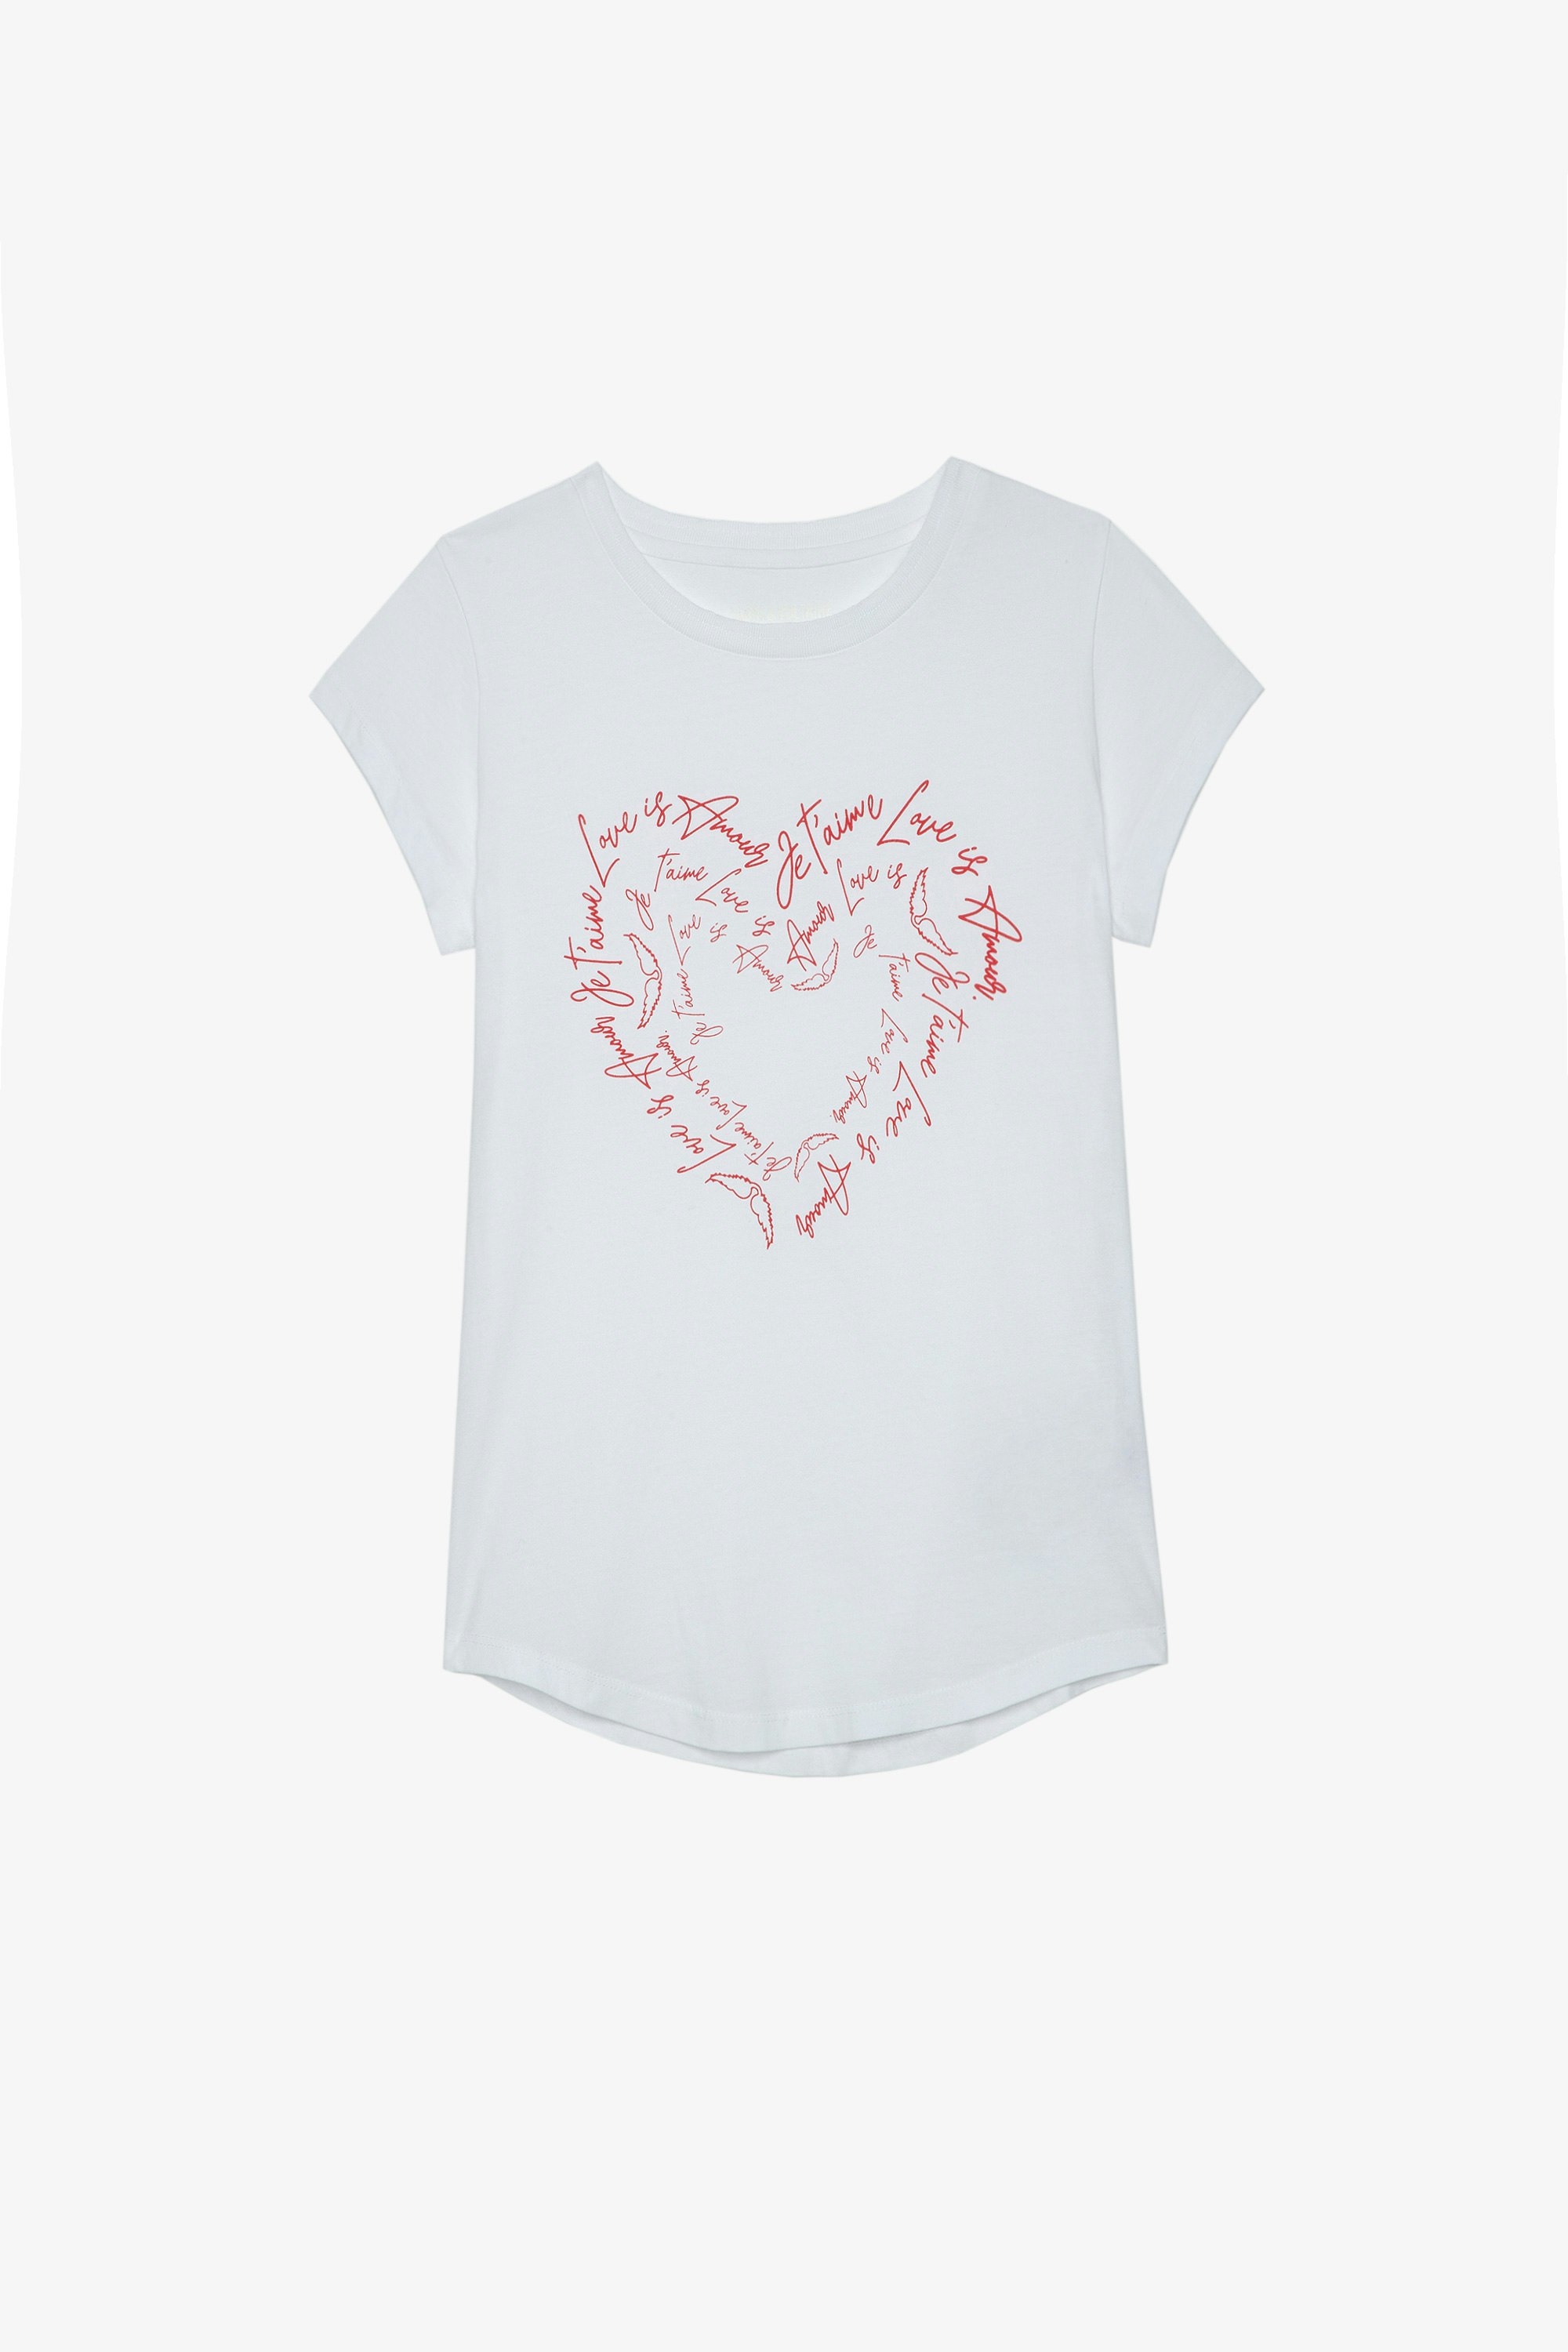 T-shirt Skinny Heart T-shirt en coton blanc affichant des messages d'amour en forme de cœur et orné de cristaux